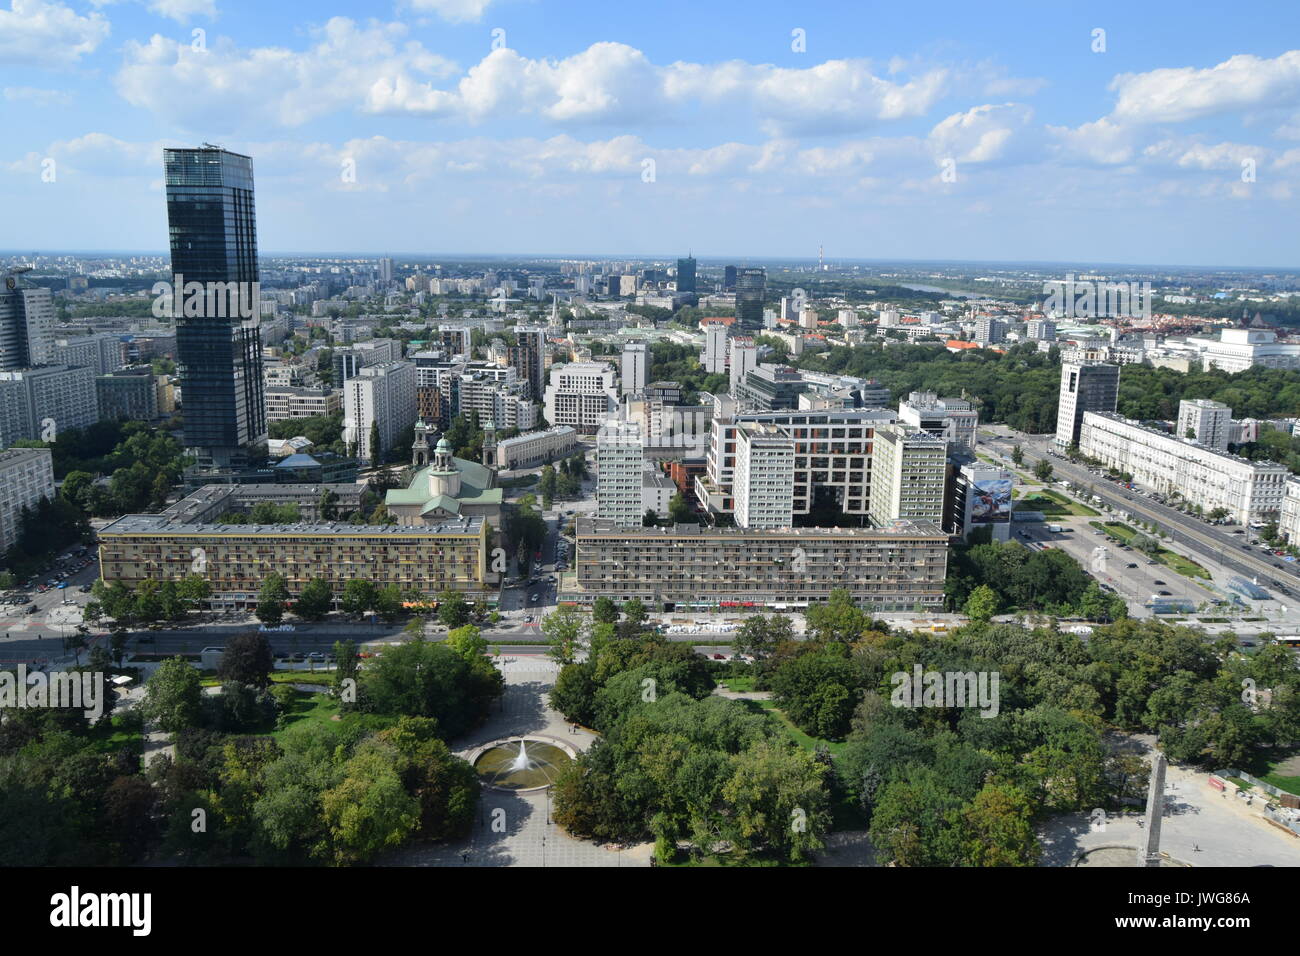 Warsaw City Skyline, Poland Stock Photo